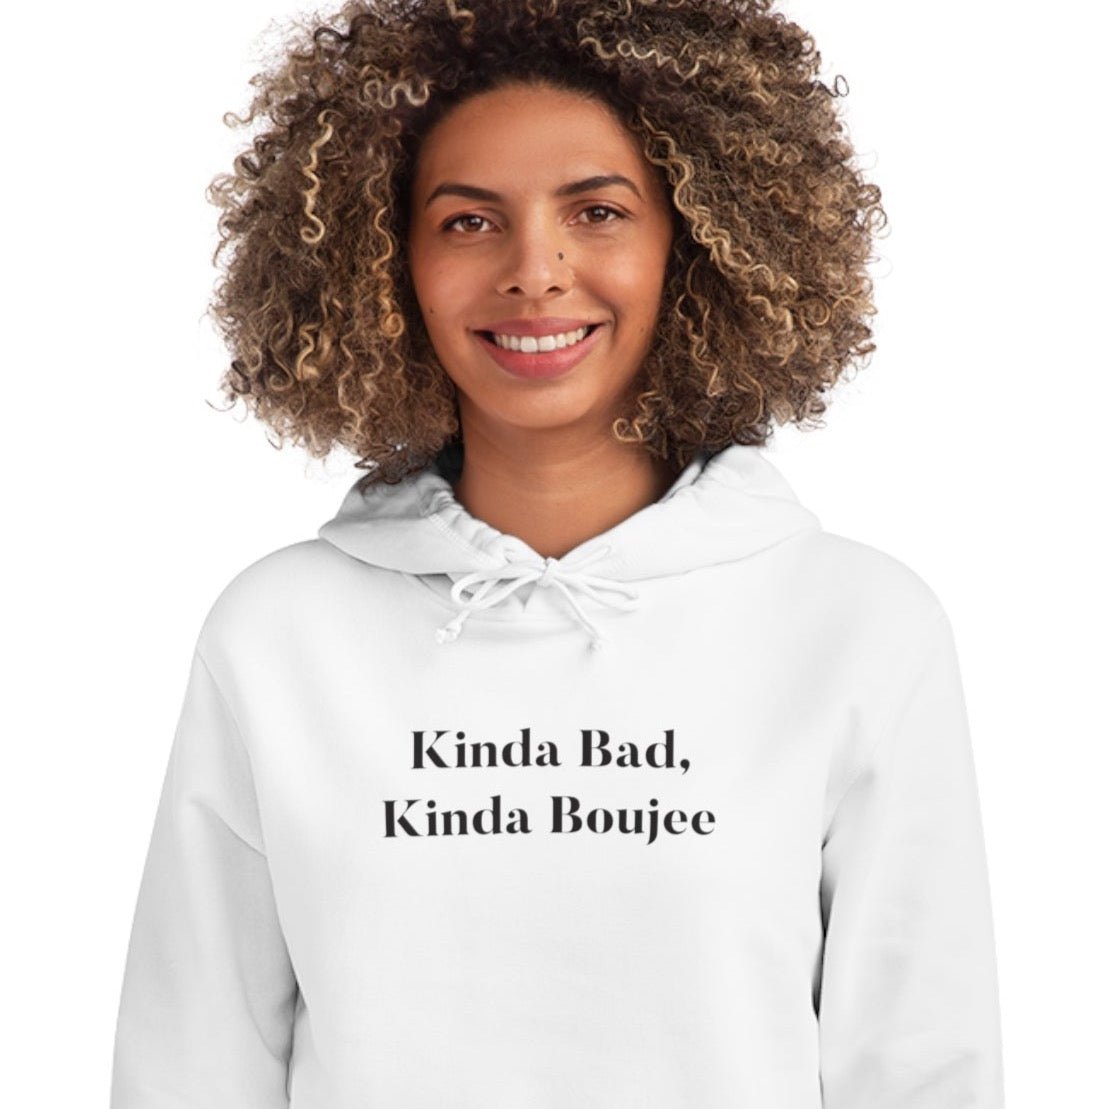 Urban 'Kinda bad, Kinda Boujee' Organic Cotton Hoodie - Kind Bad